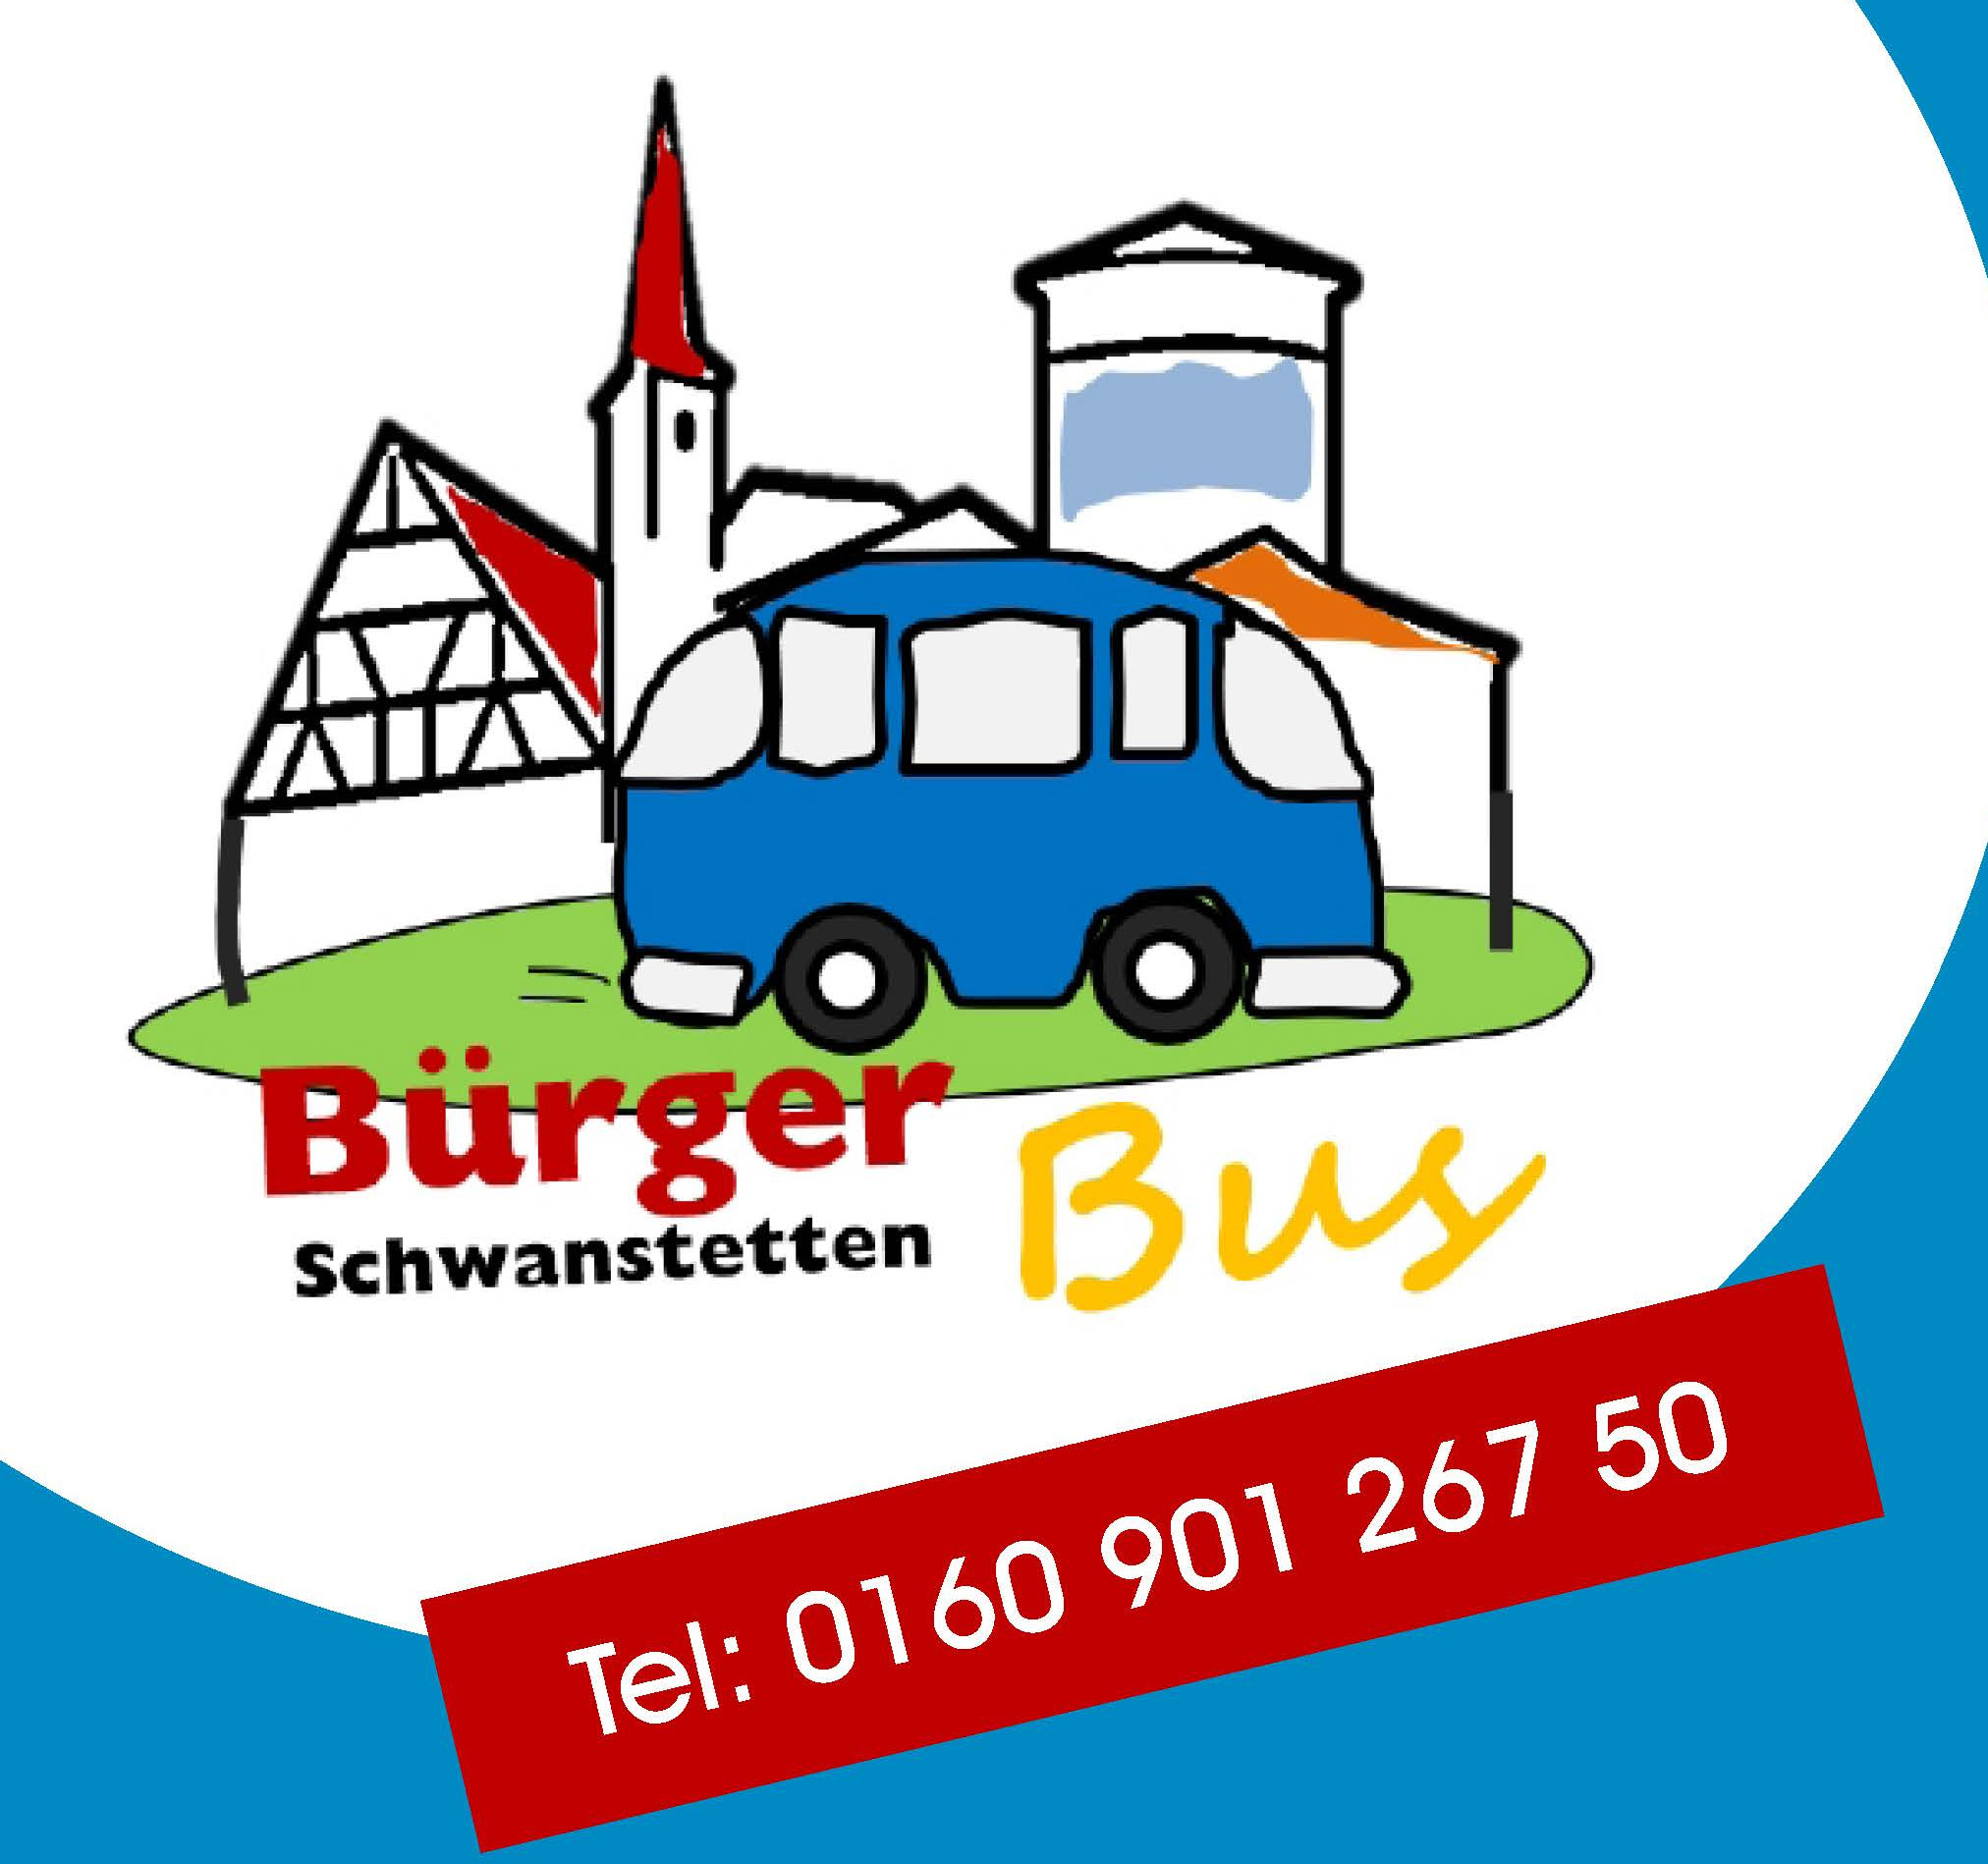  Werbeplakat für den Bürgerbus Schwanstetten mit Angabe der Telefonnummer 0160 901 267 50. 